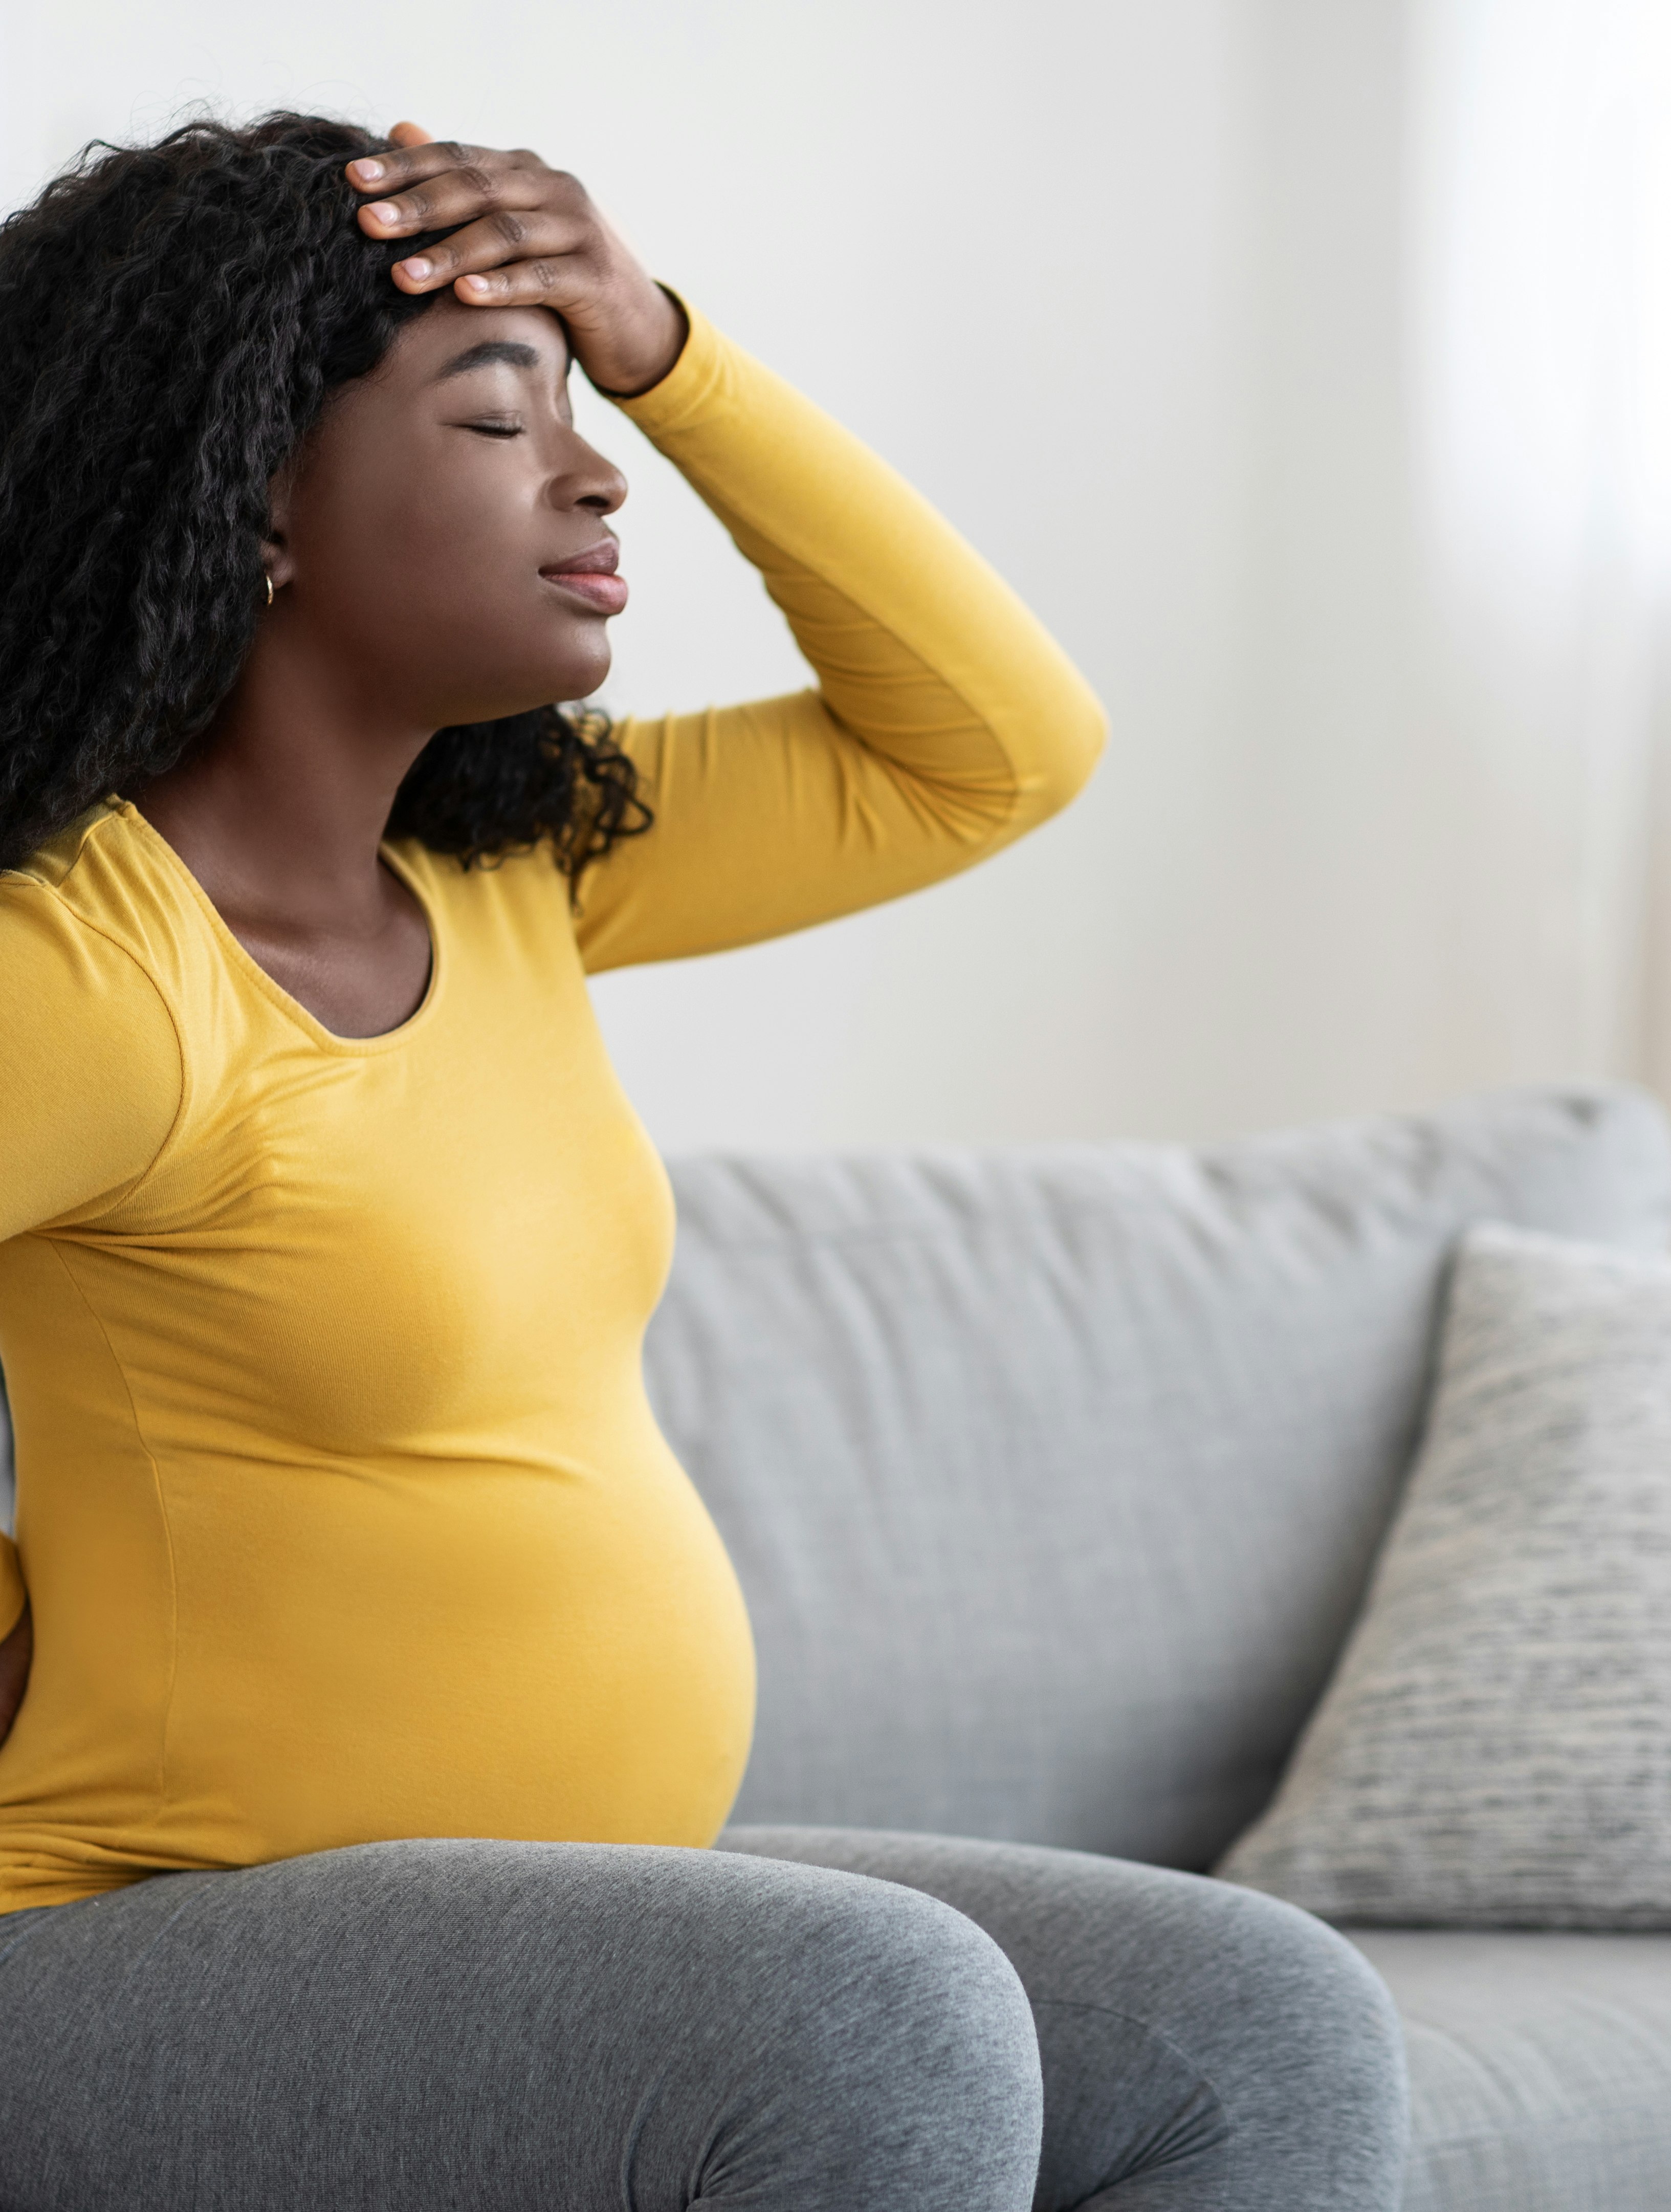 hovedpine gravid symptomer